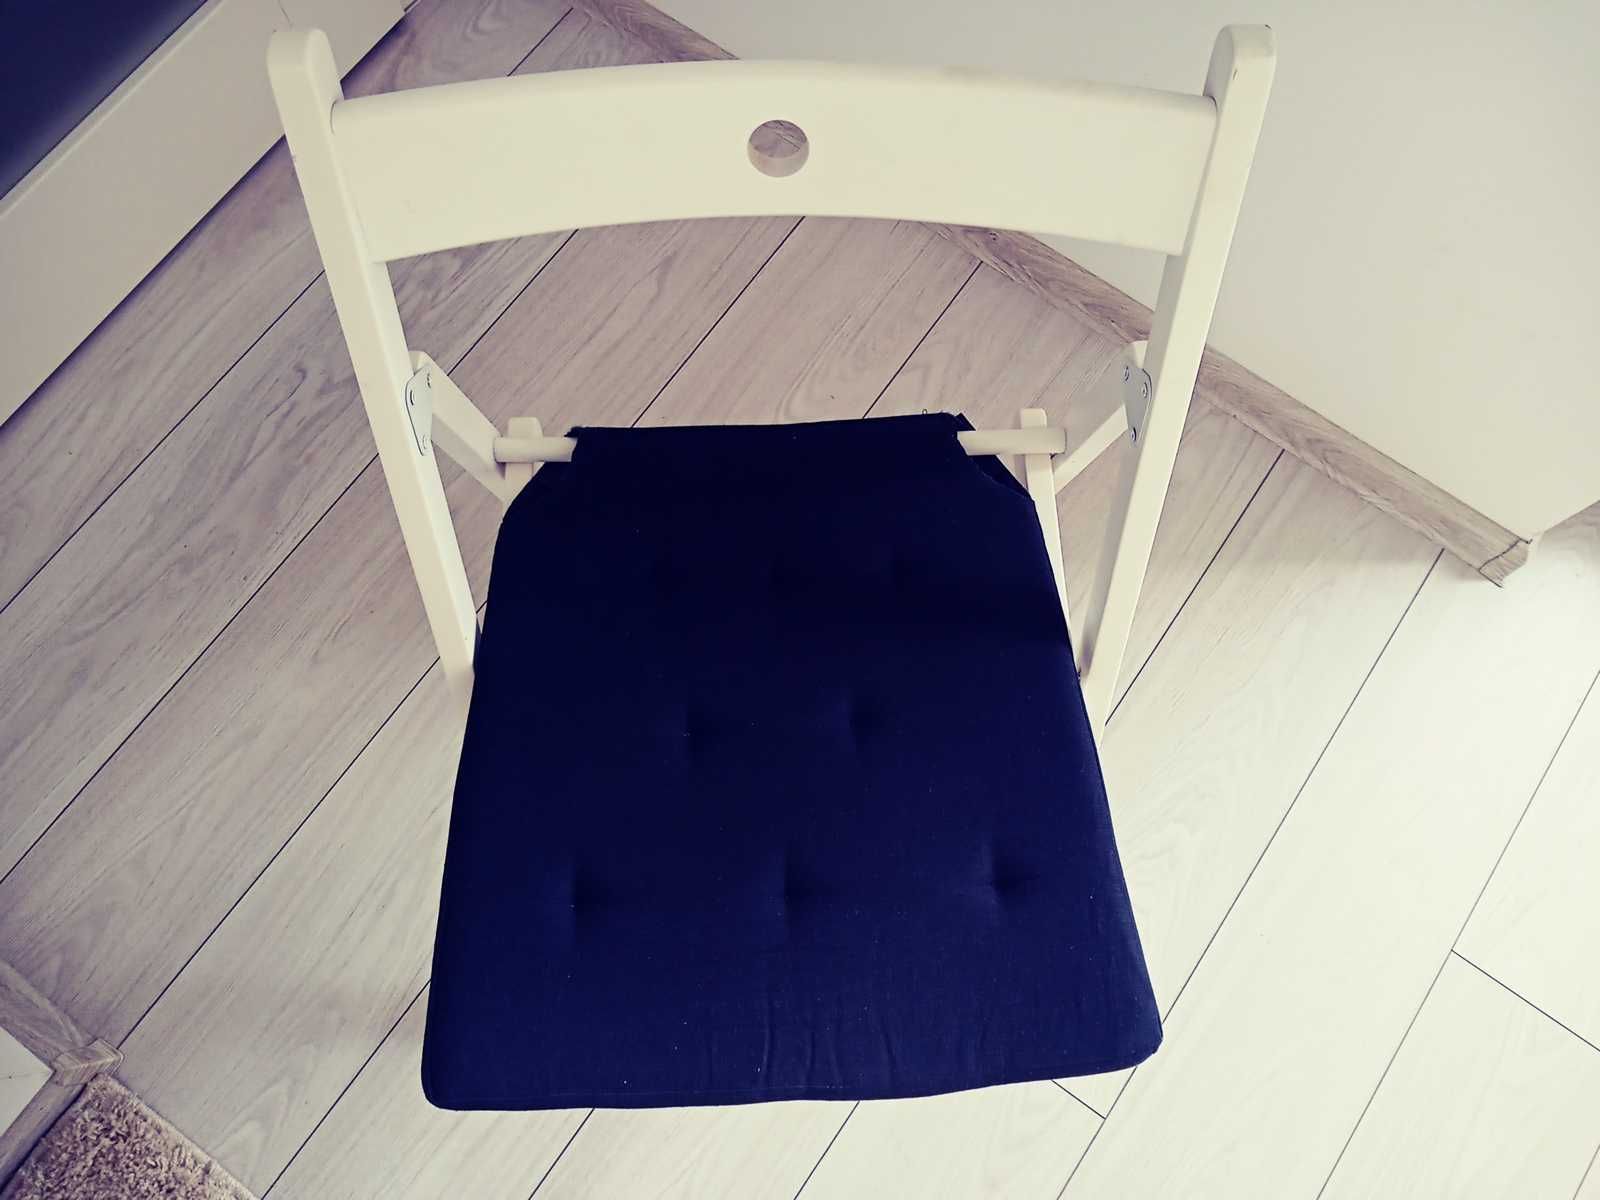 Krzeslo skladane IKEA